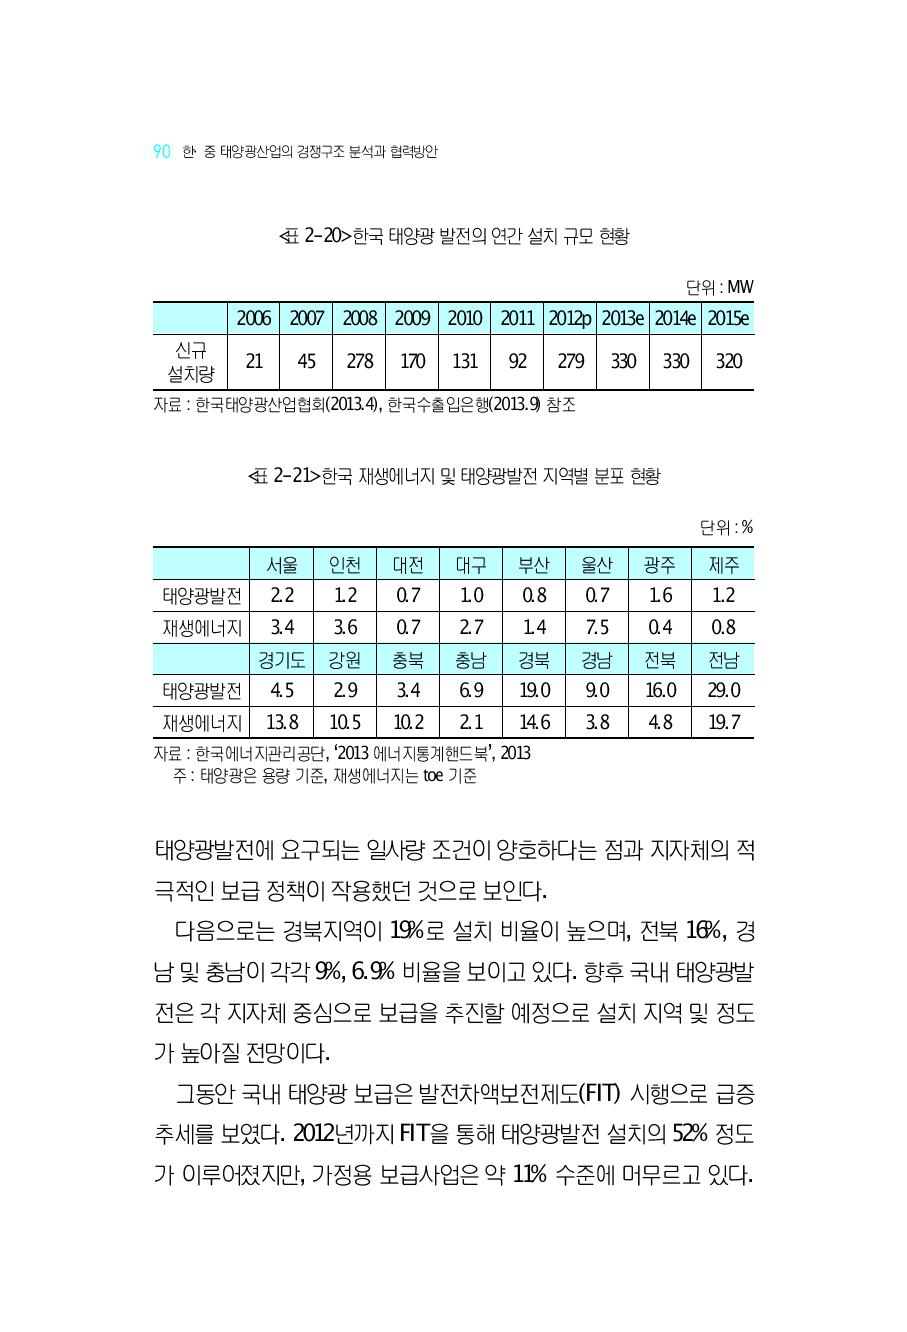 한국 재생에너지 및 태양광발전 지역별 분포 현황